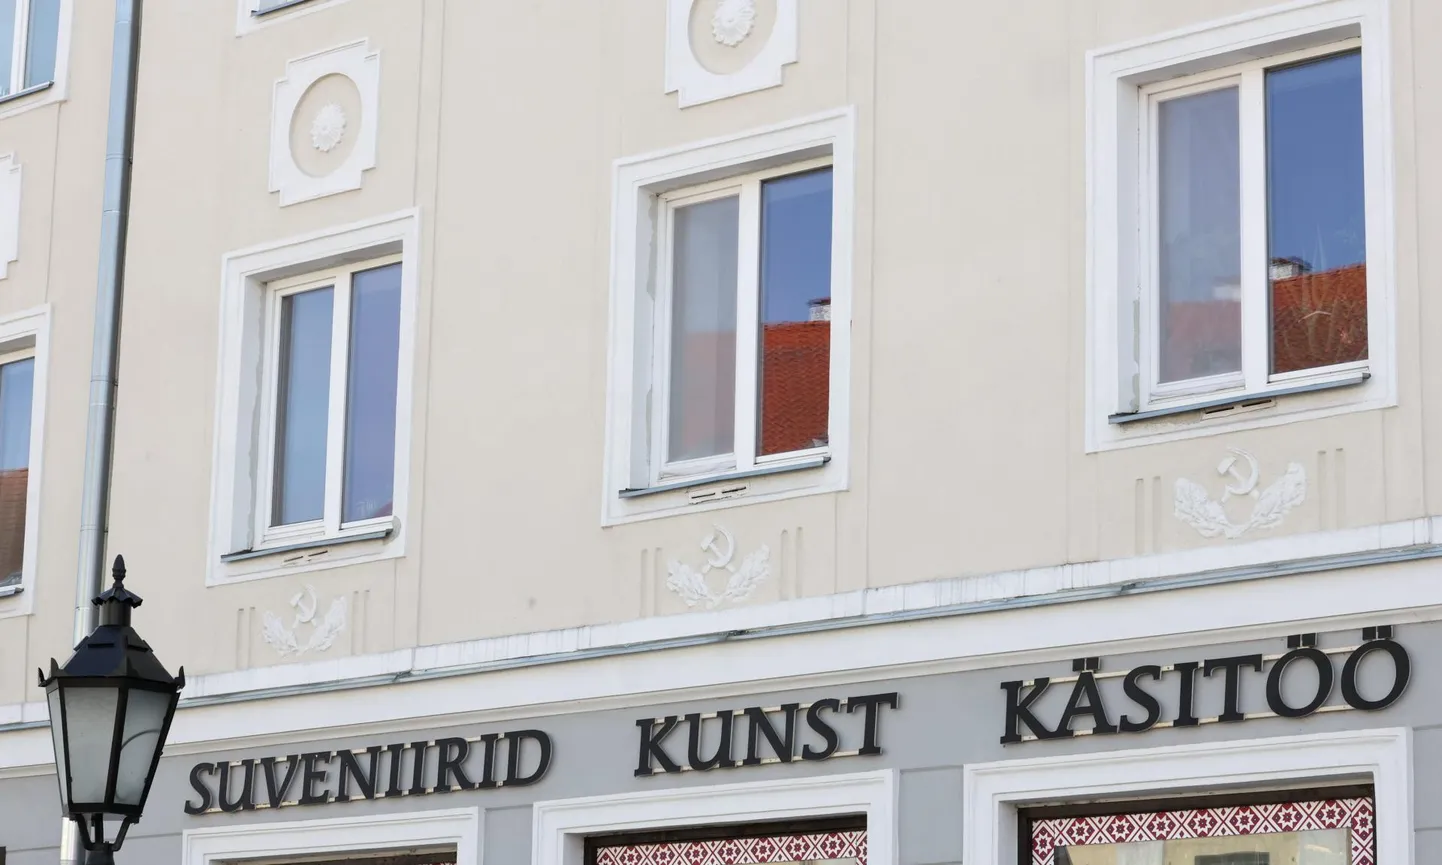 В понедельник серпы и молоты на фасаде дома по адресу Кюйни, 2 все еще были на месте, хотя Красная армии покинула Эстонскую Республику почти 33 года назад.